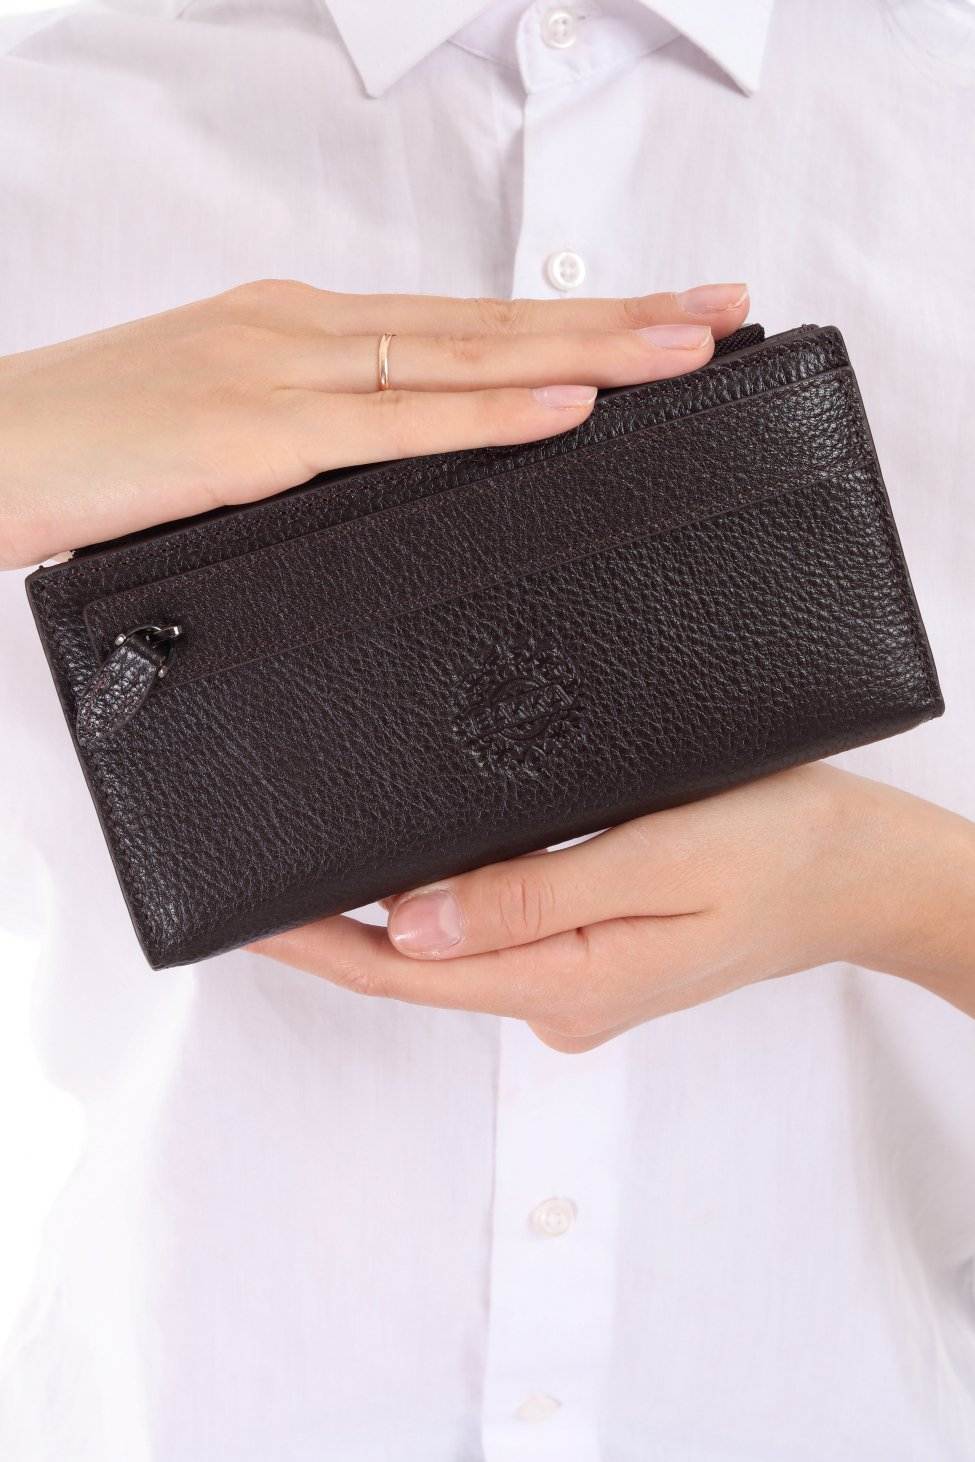 3760 - Leather wallet - Dark Brown - bakkaclothing